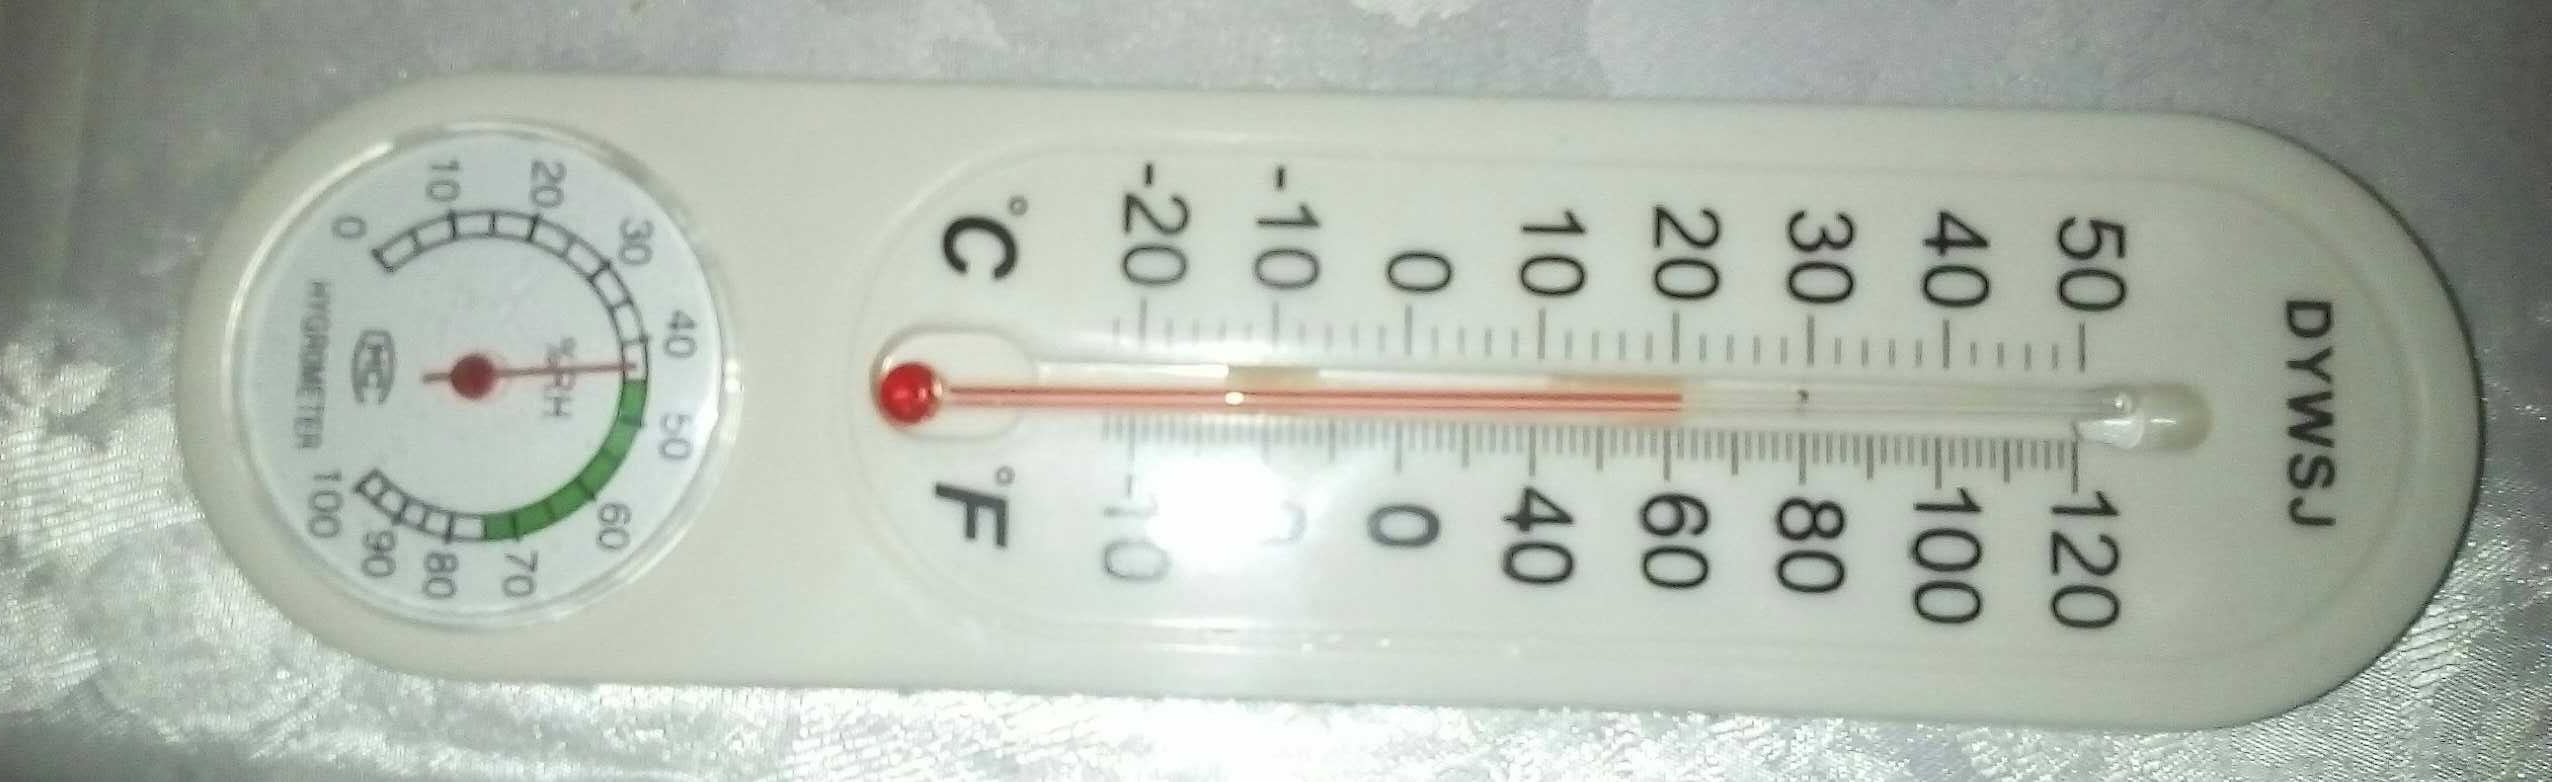 Термометр + помериться влажность доставка
Termometr + namliki o'lchidi